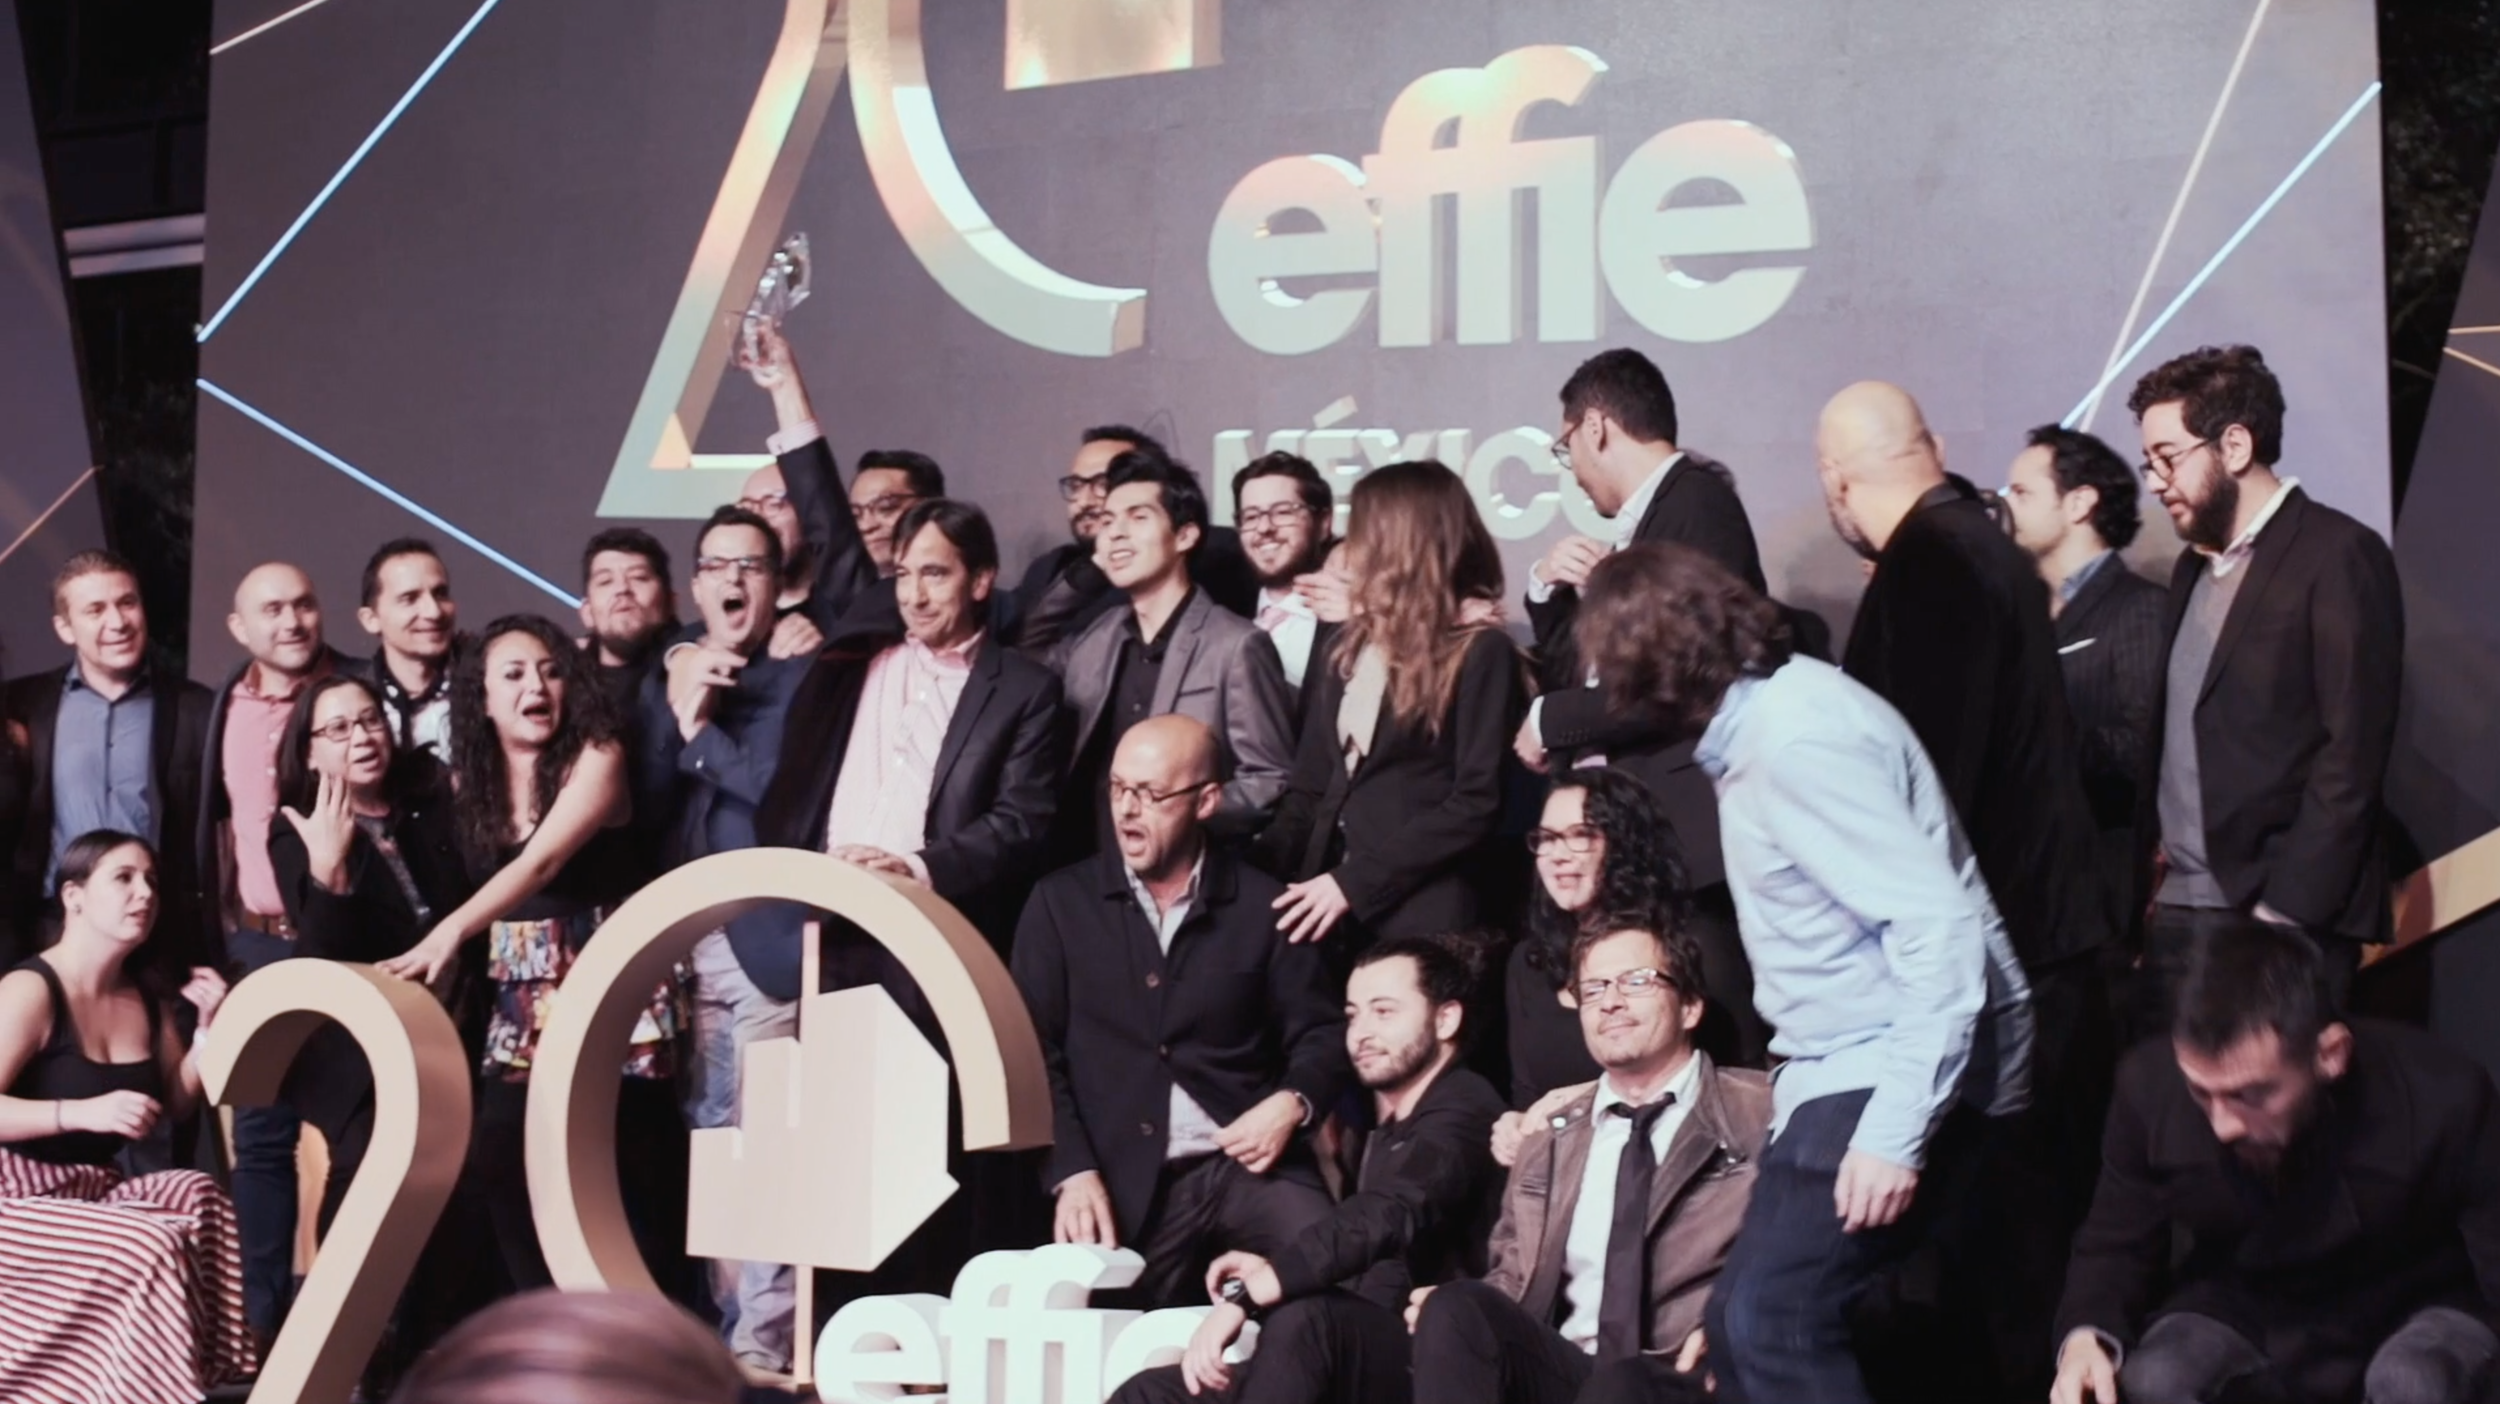 Premios Effie